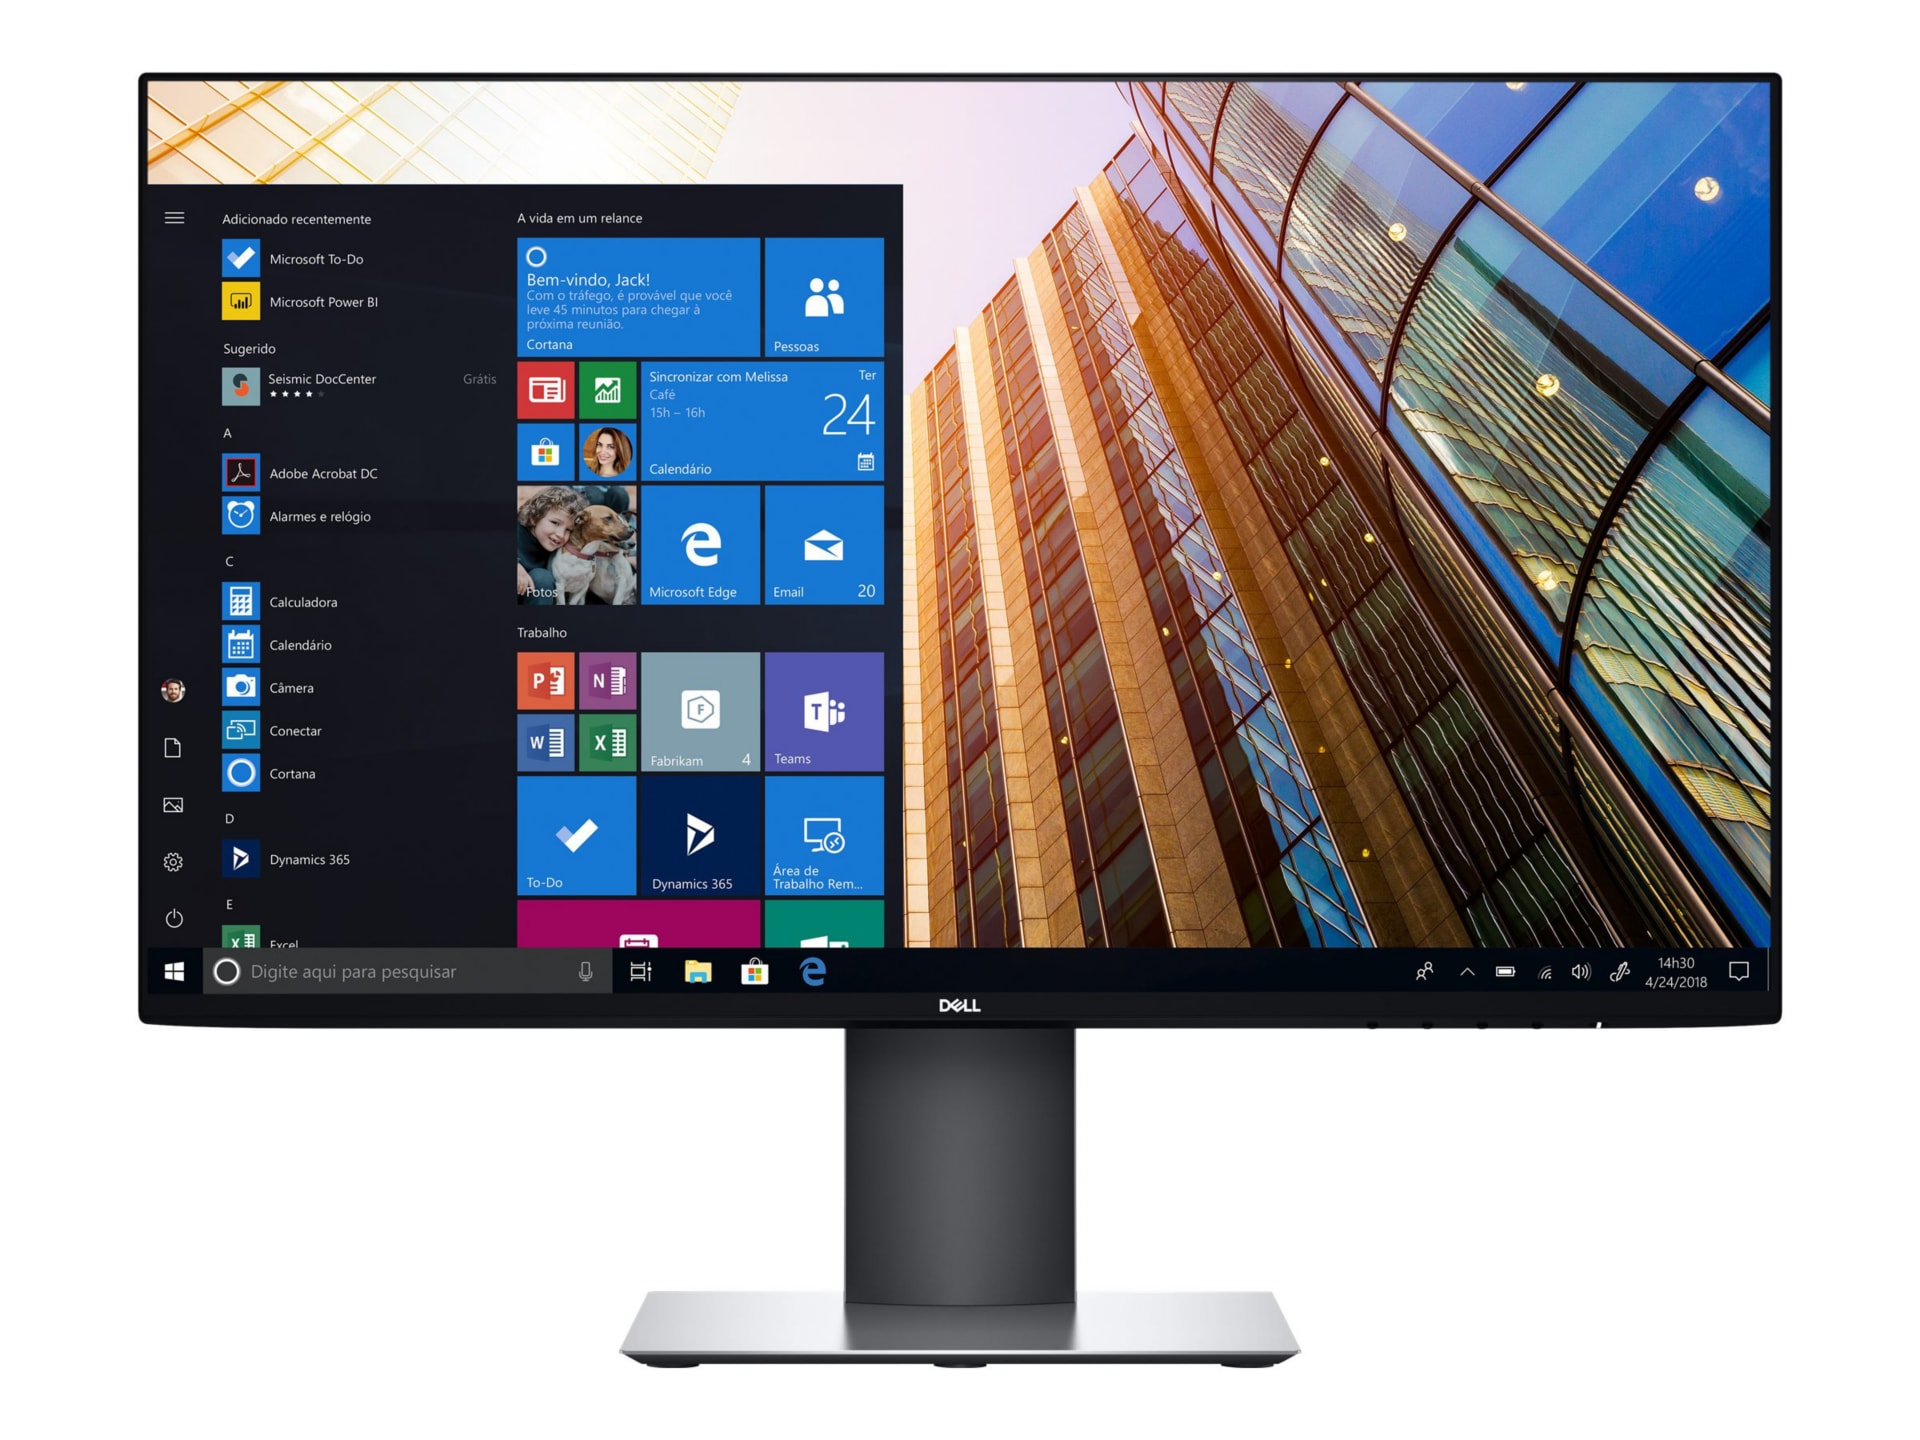 Dell UltraSharp U2419H - LED monitor - Full HD (1080p) - 24"